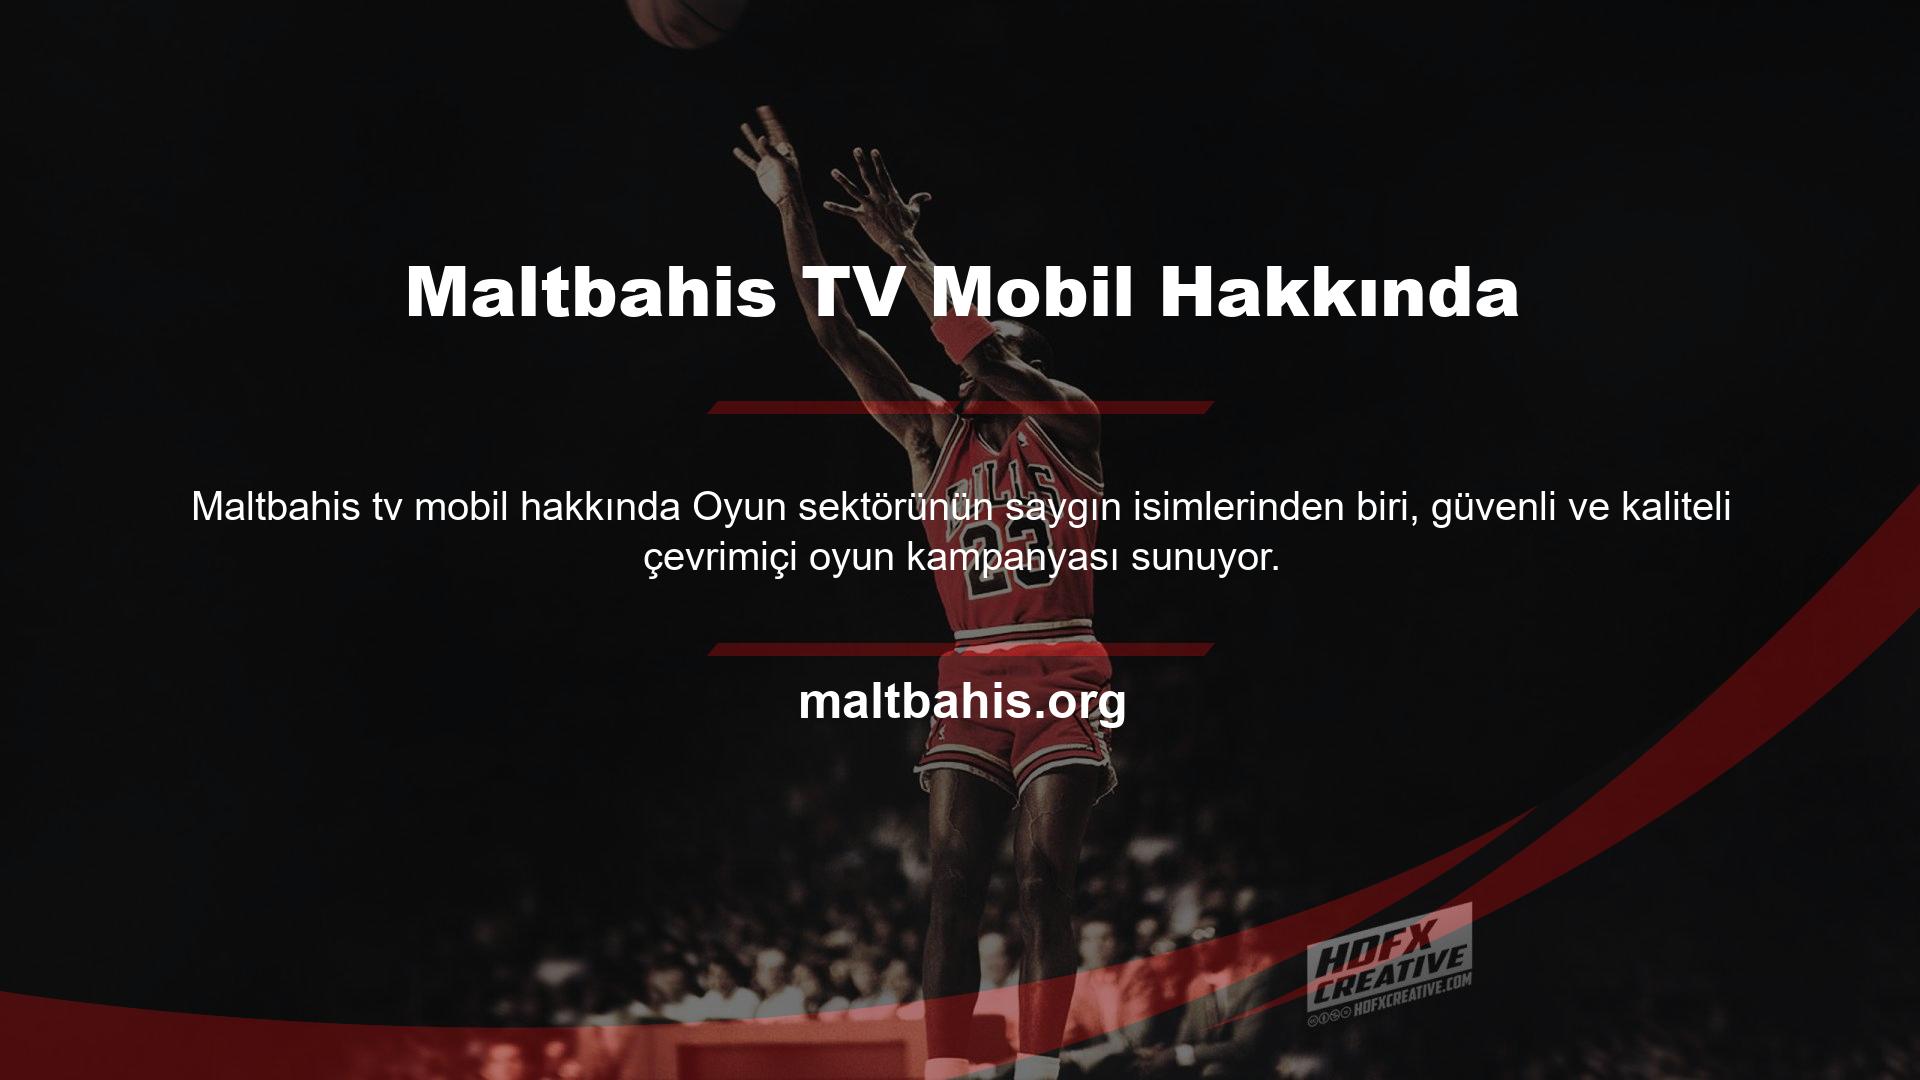 Maltbahis TV Mobil Hakkında